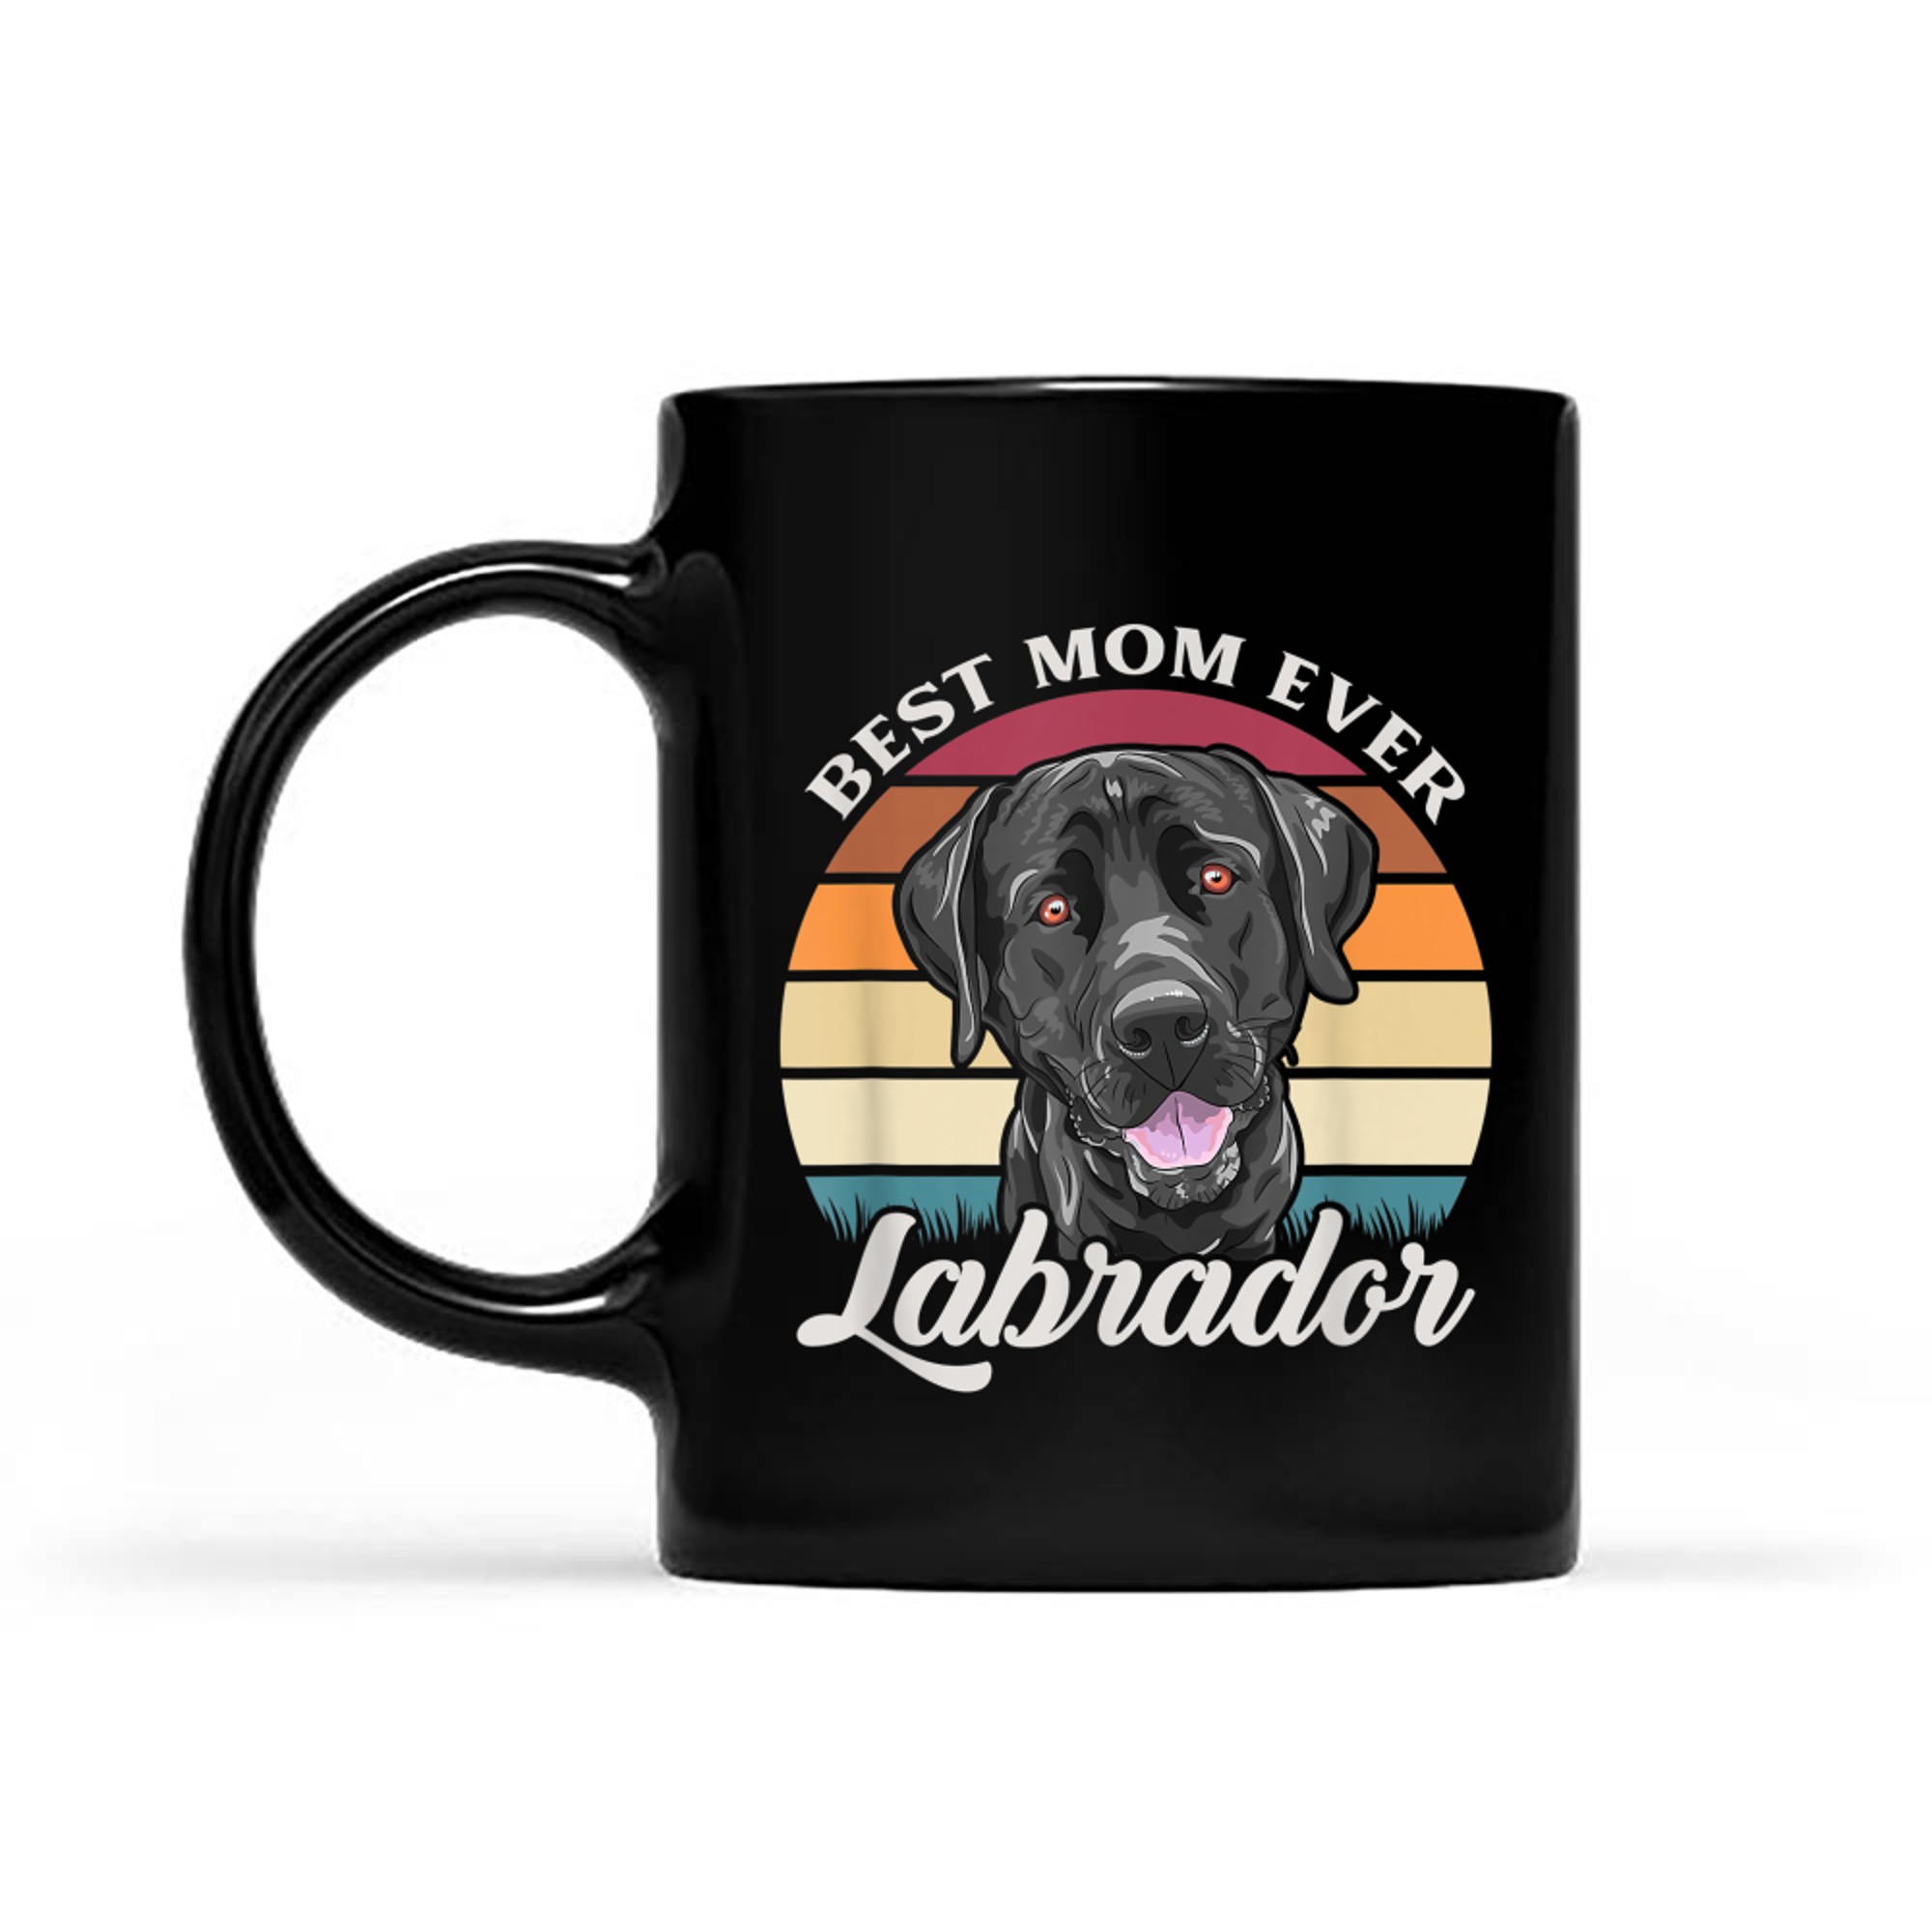 Best Mom Ever Black Labrador Dog Owner Gift mug black